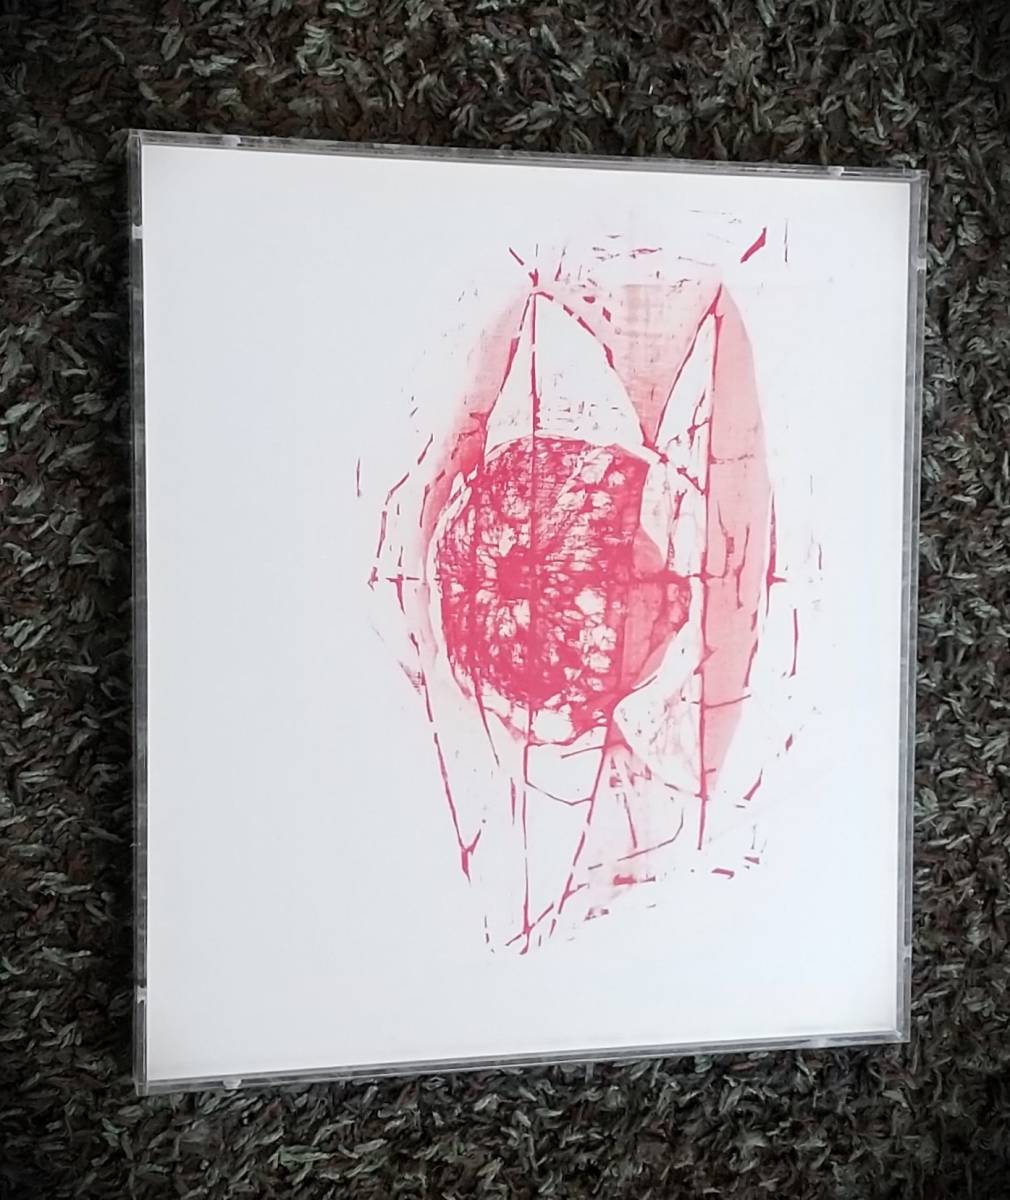 Seiichiro Miida صورة للوسائط المختلطة باللون الأحمر, أنتجت في عام 2007, موقعة, إطار أكريليك فريد من نوعه [الأصالة مضمونة] Moriichiro Miida, تلوين, ألوان مائية, اللوحة التجريدية